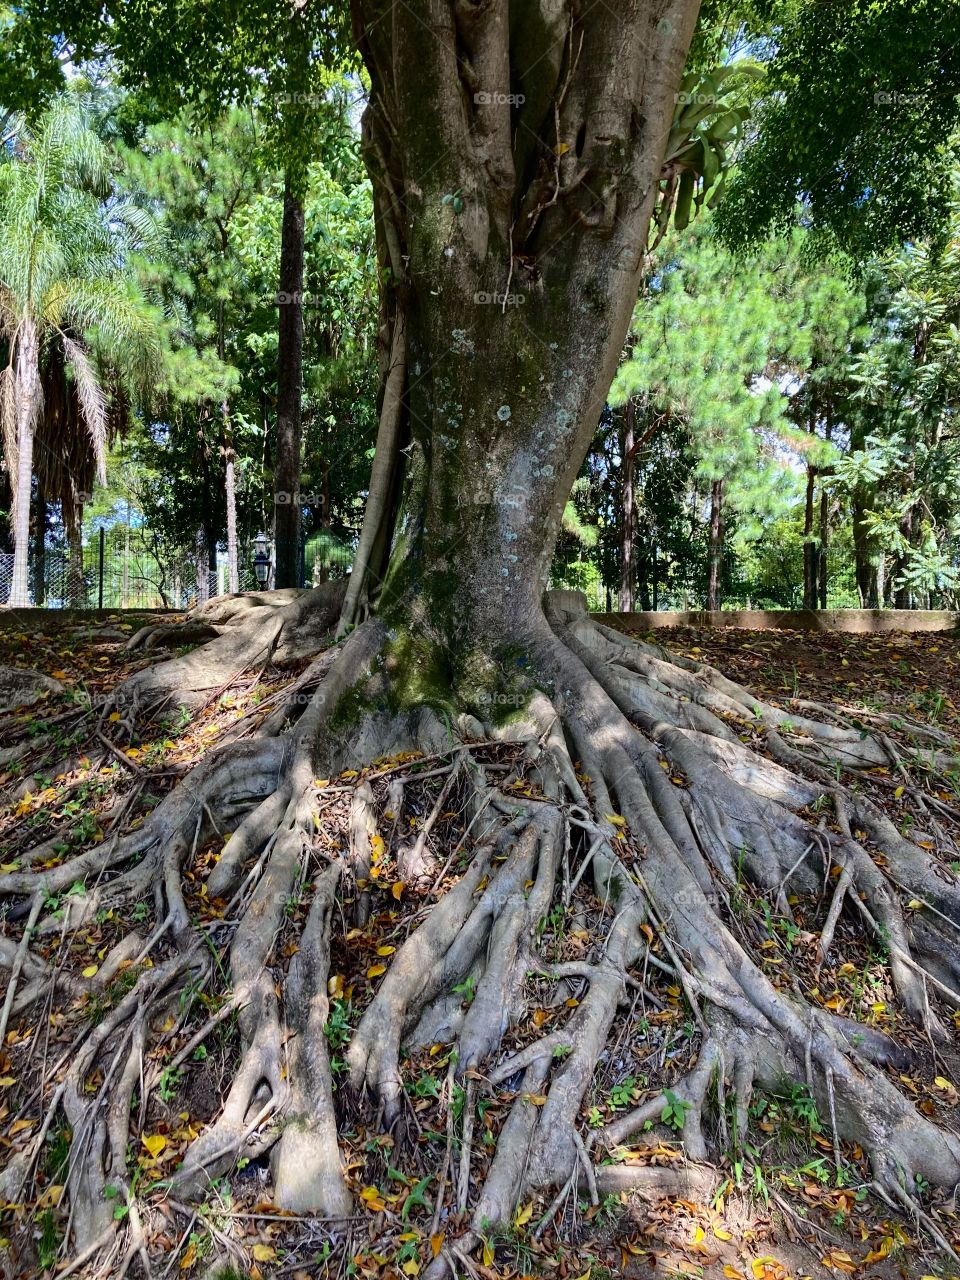 Quantos galhos de raízes há nessa árvore?
Difícil contar… mas que ela é impressionante, ô se é!
📸
#FOTOGRAFIAéNOSSOhobby
#natureza #fotografia #paisagem #landscapes #inspiração #mobgrafia #XôStress #árvore